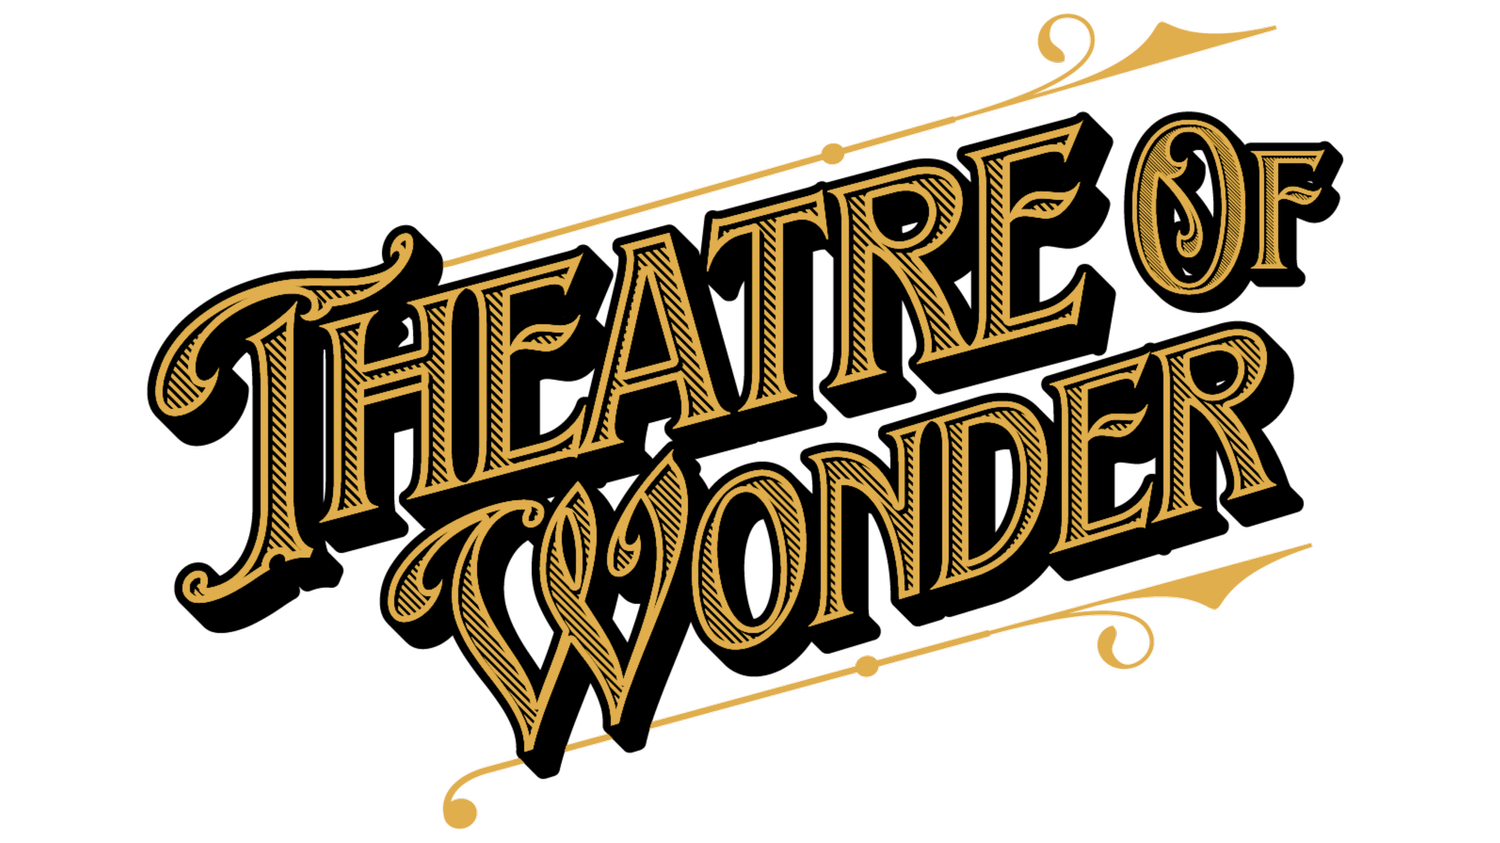 Theatre of Wonder